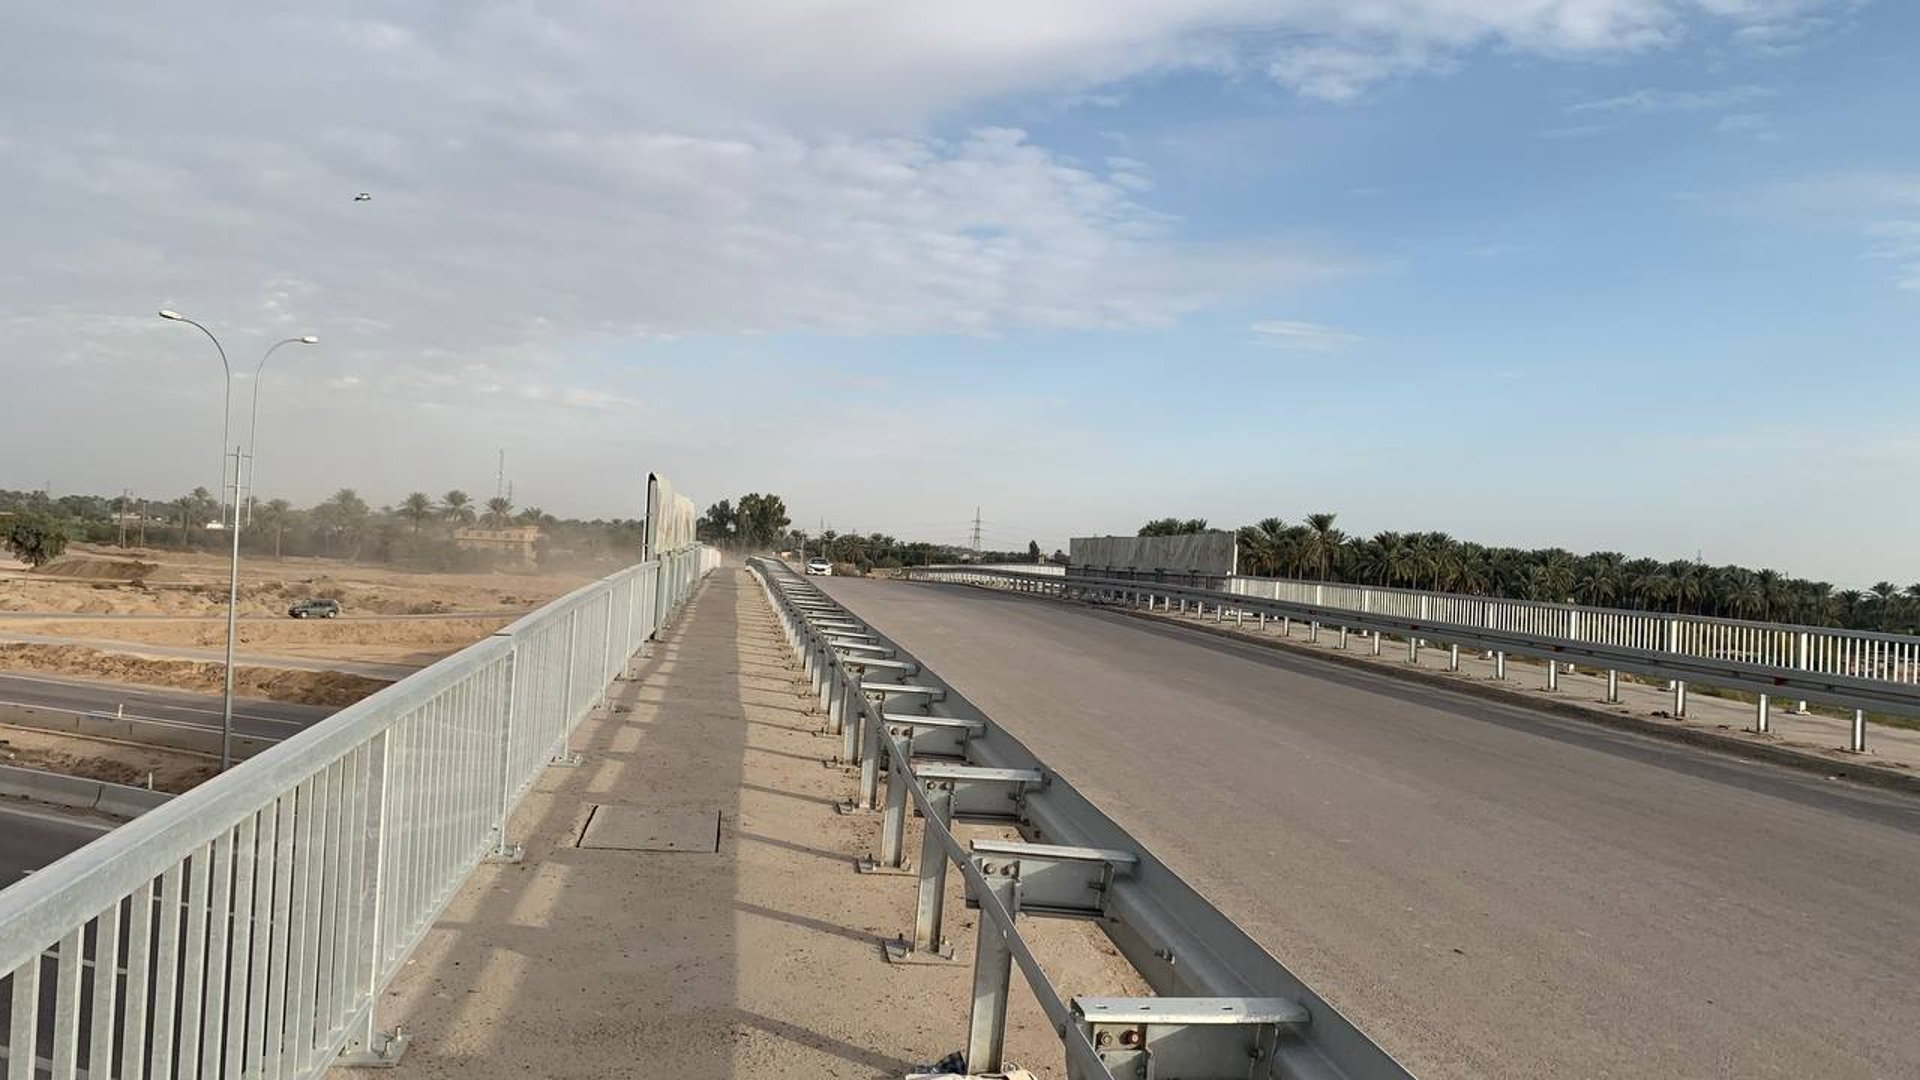 دخل الخدمة قبل أن يكتمل.. جسر الـ37 بدأ يربط الخميسة بناحية الرشيد في بغداد